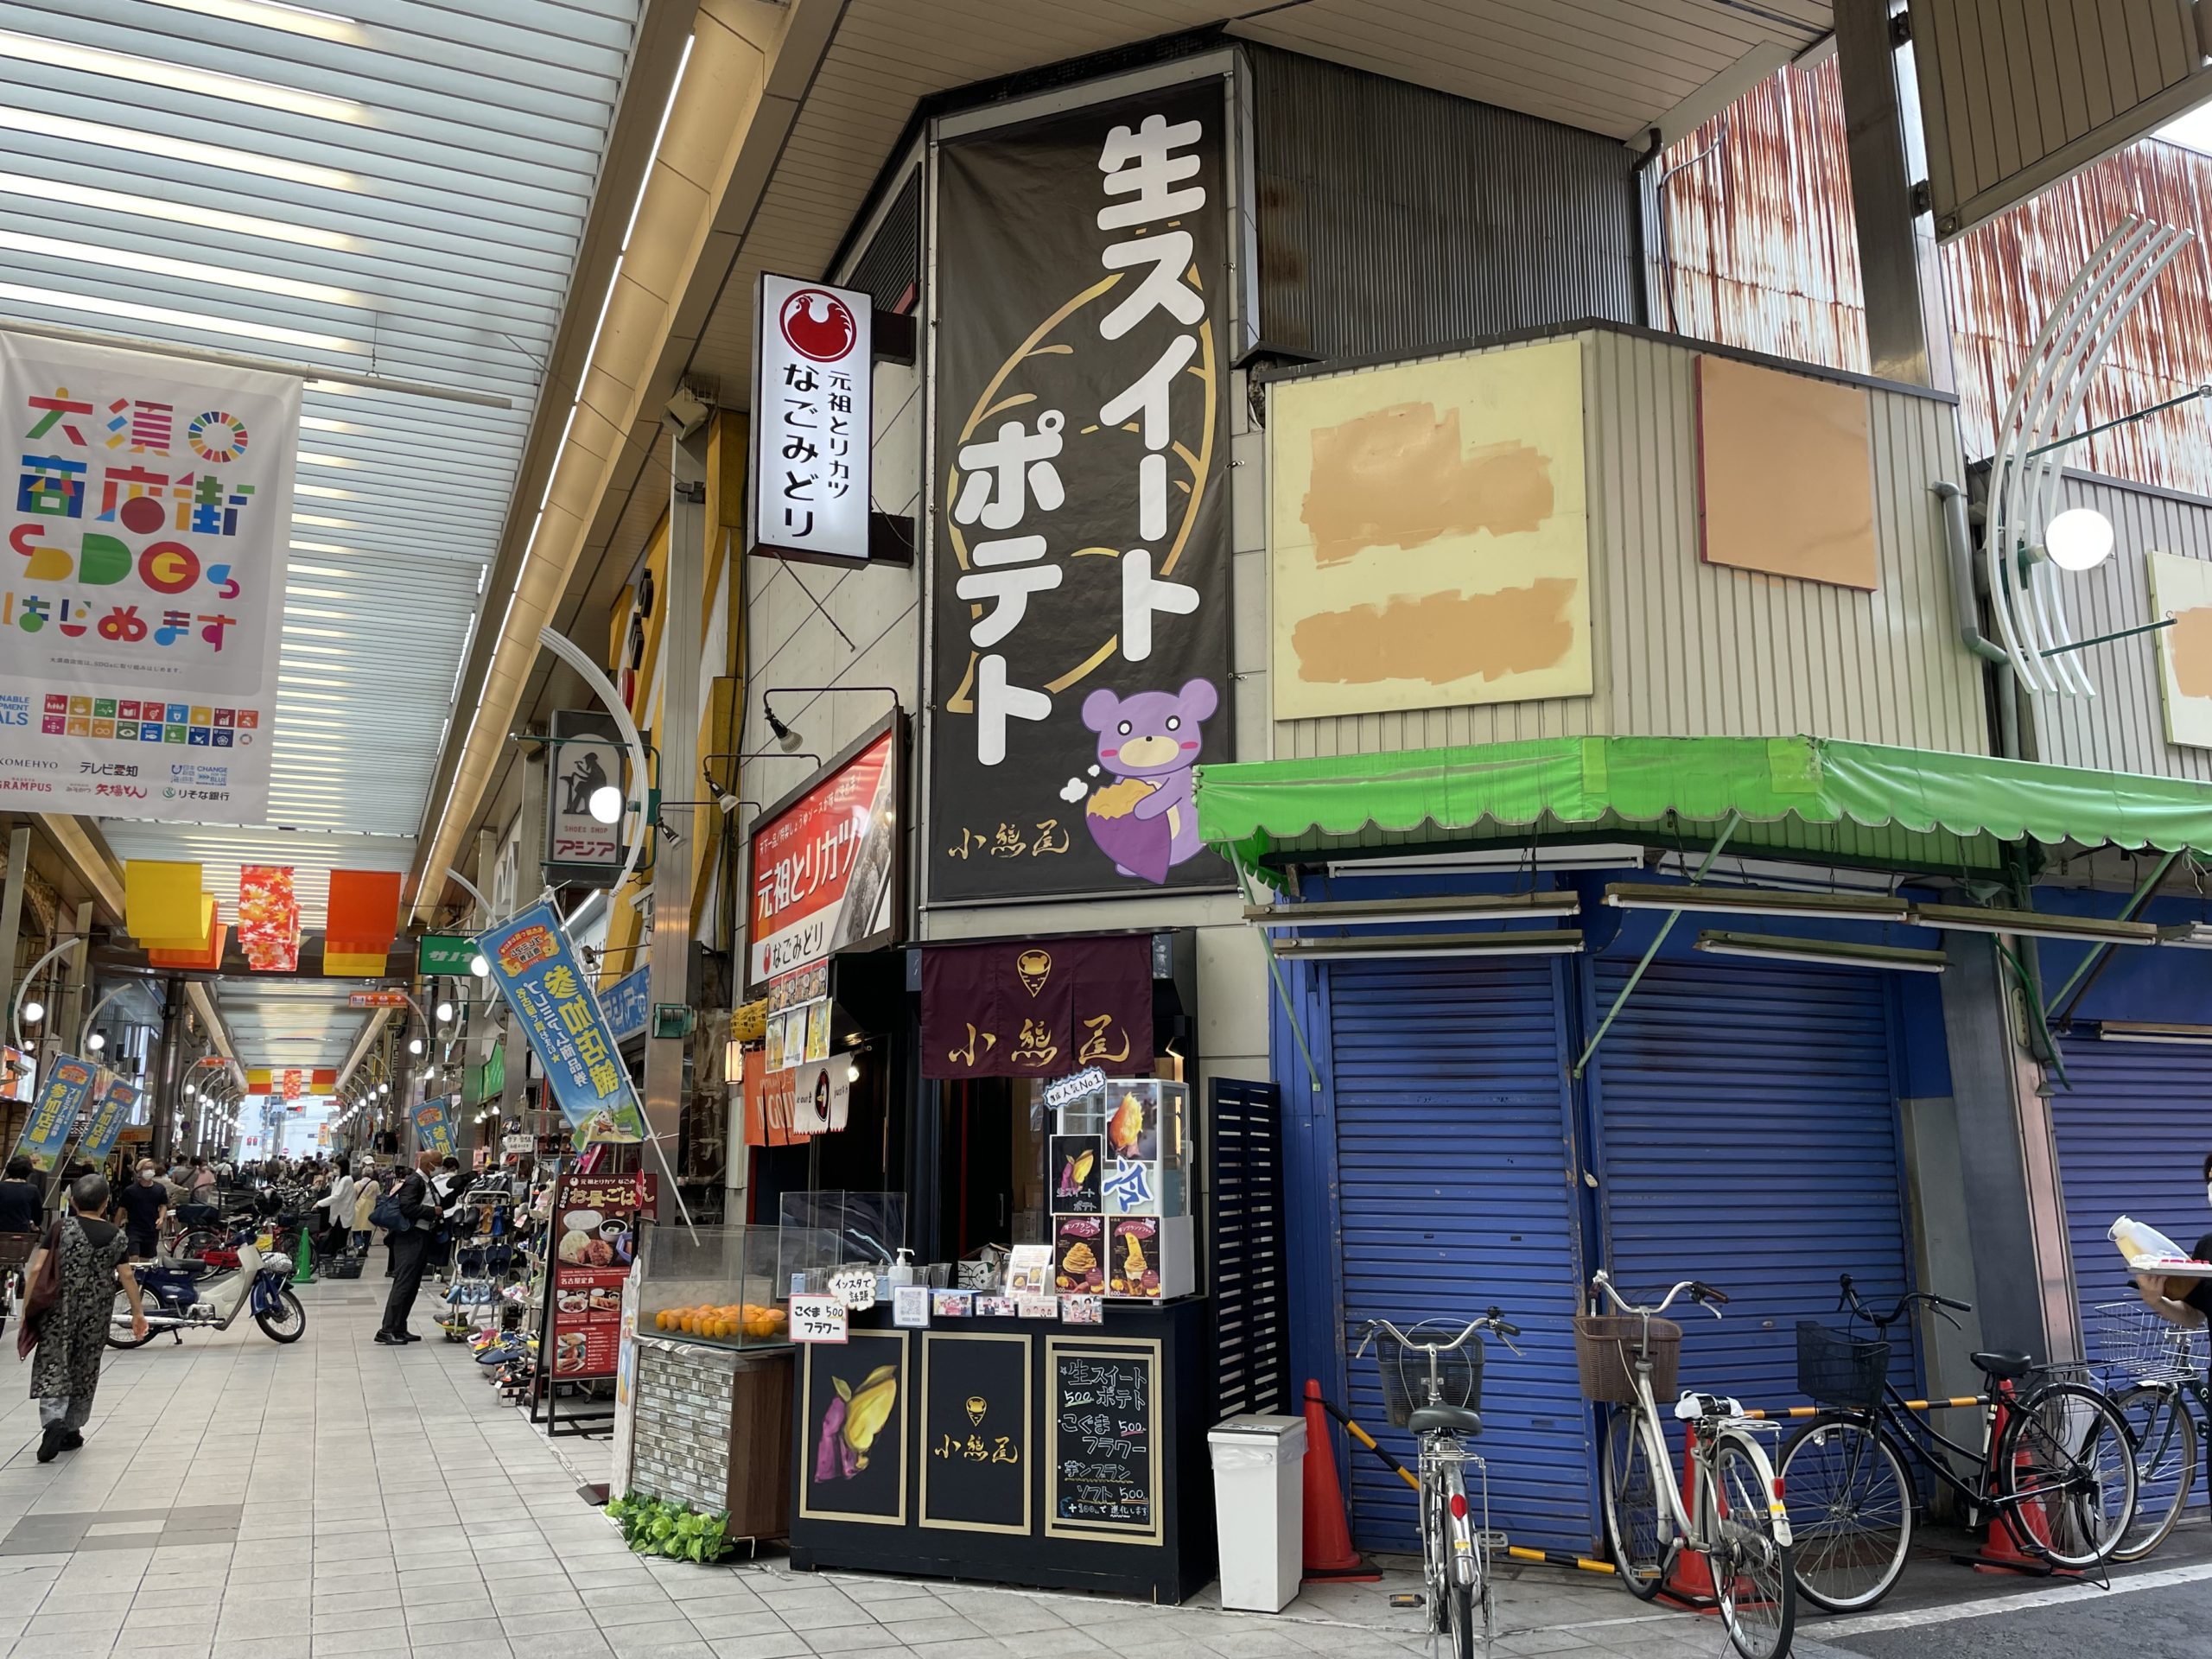 上前津の芋菓子専門店 小熊屋 はサツマイモをふんだんに使用したソフトクリームやチップスが美味しい芋菓子専門店